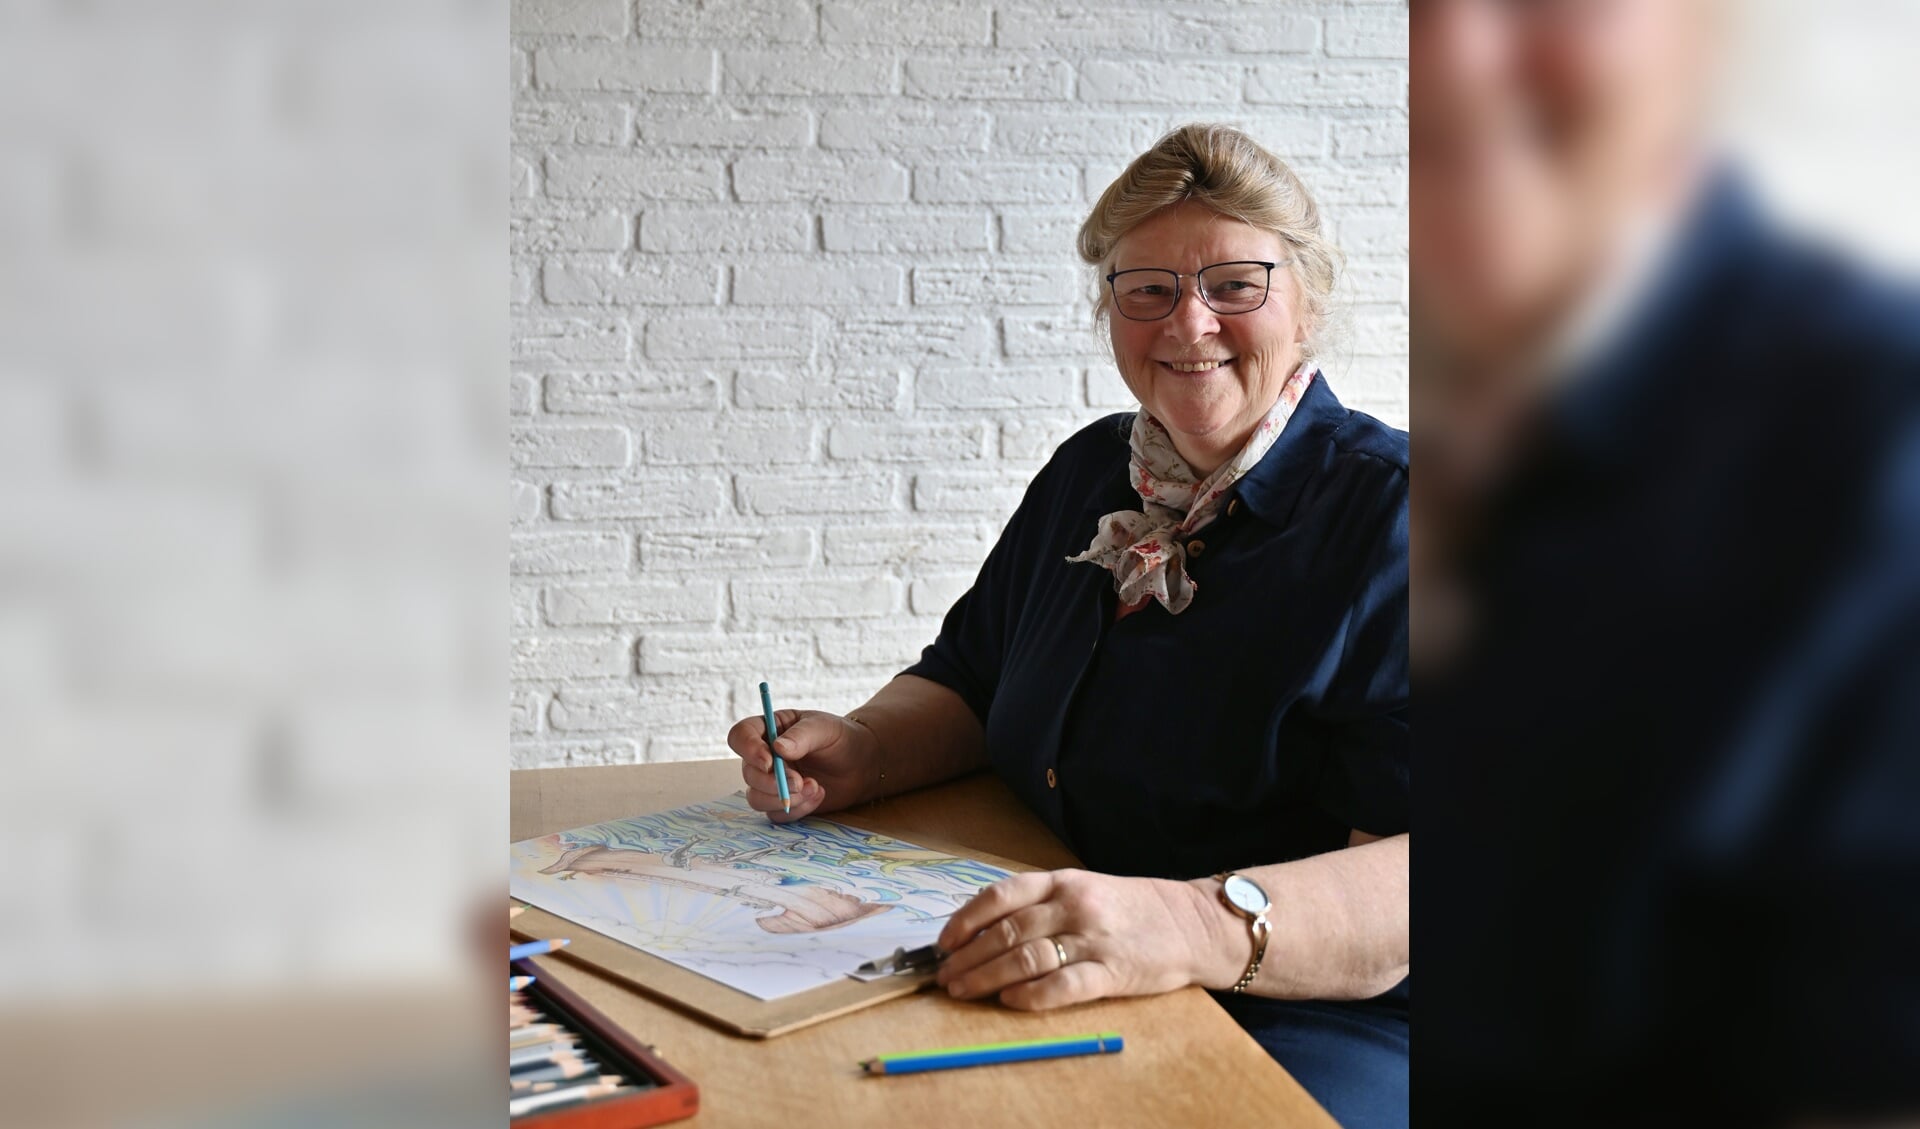 Anita tekende een kleurboek over het verhaal van Noach. Foto: Emelie Lieftink